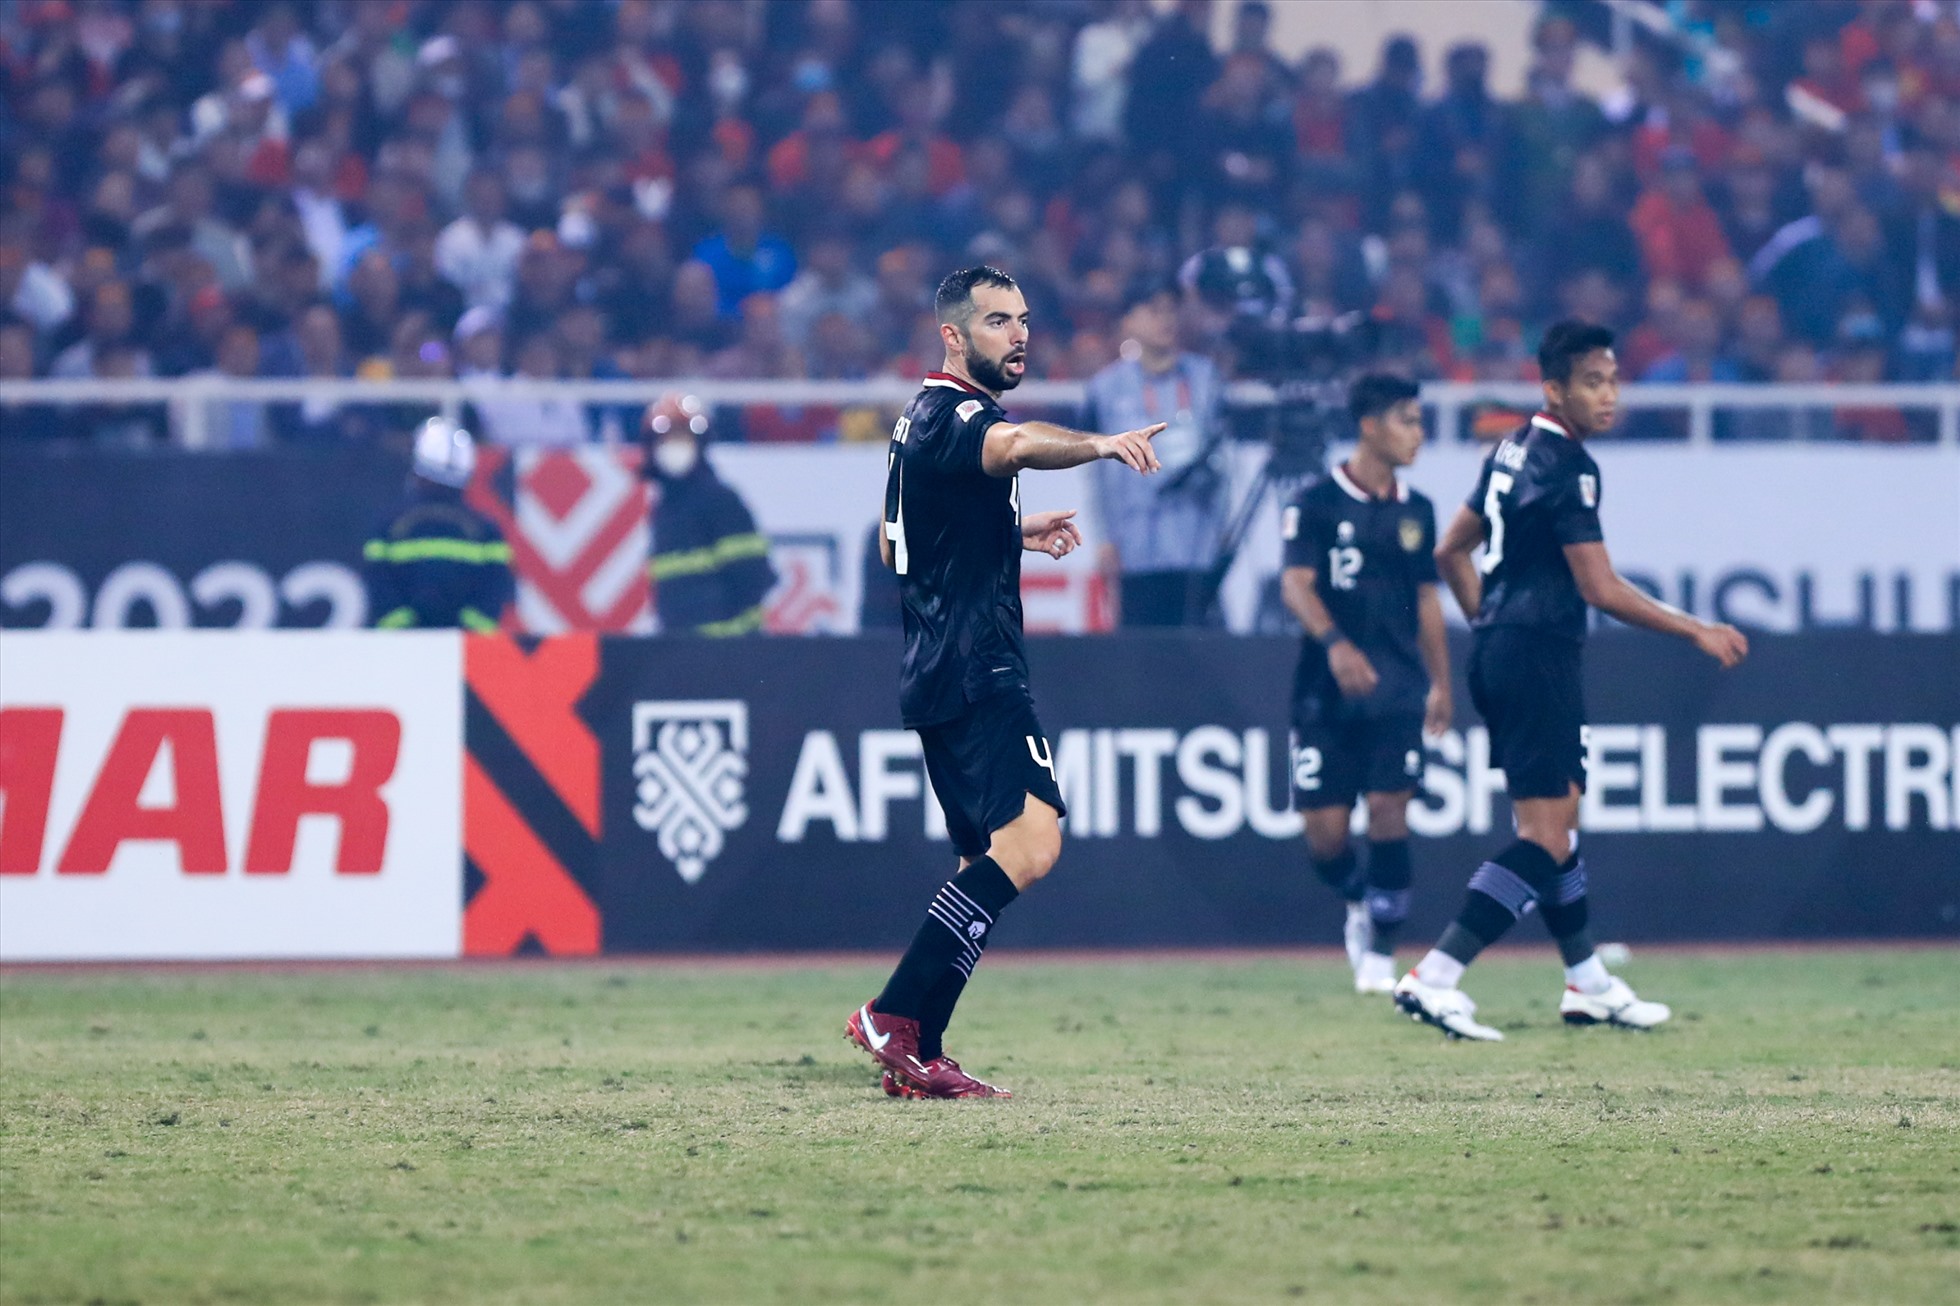 Trước khi bước vào trận bán kết lượt về AFF Cup 2022 trên sân Mỹ Đình, trung vệ Jordi Amat bên phía Indonesia được giới chuyên môn đánh giá rất cao khi từng đối đầu cả Messi và Ronaldo.